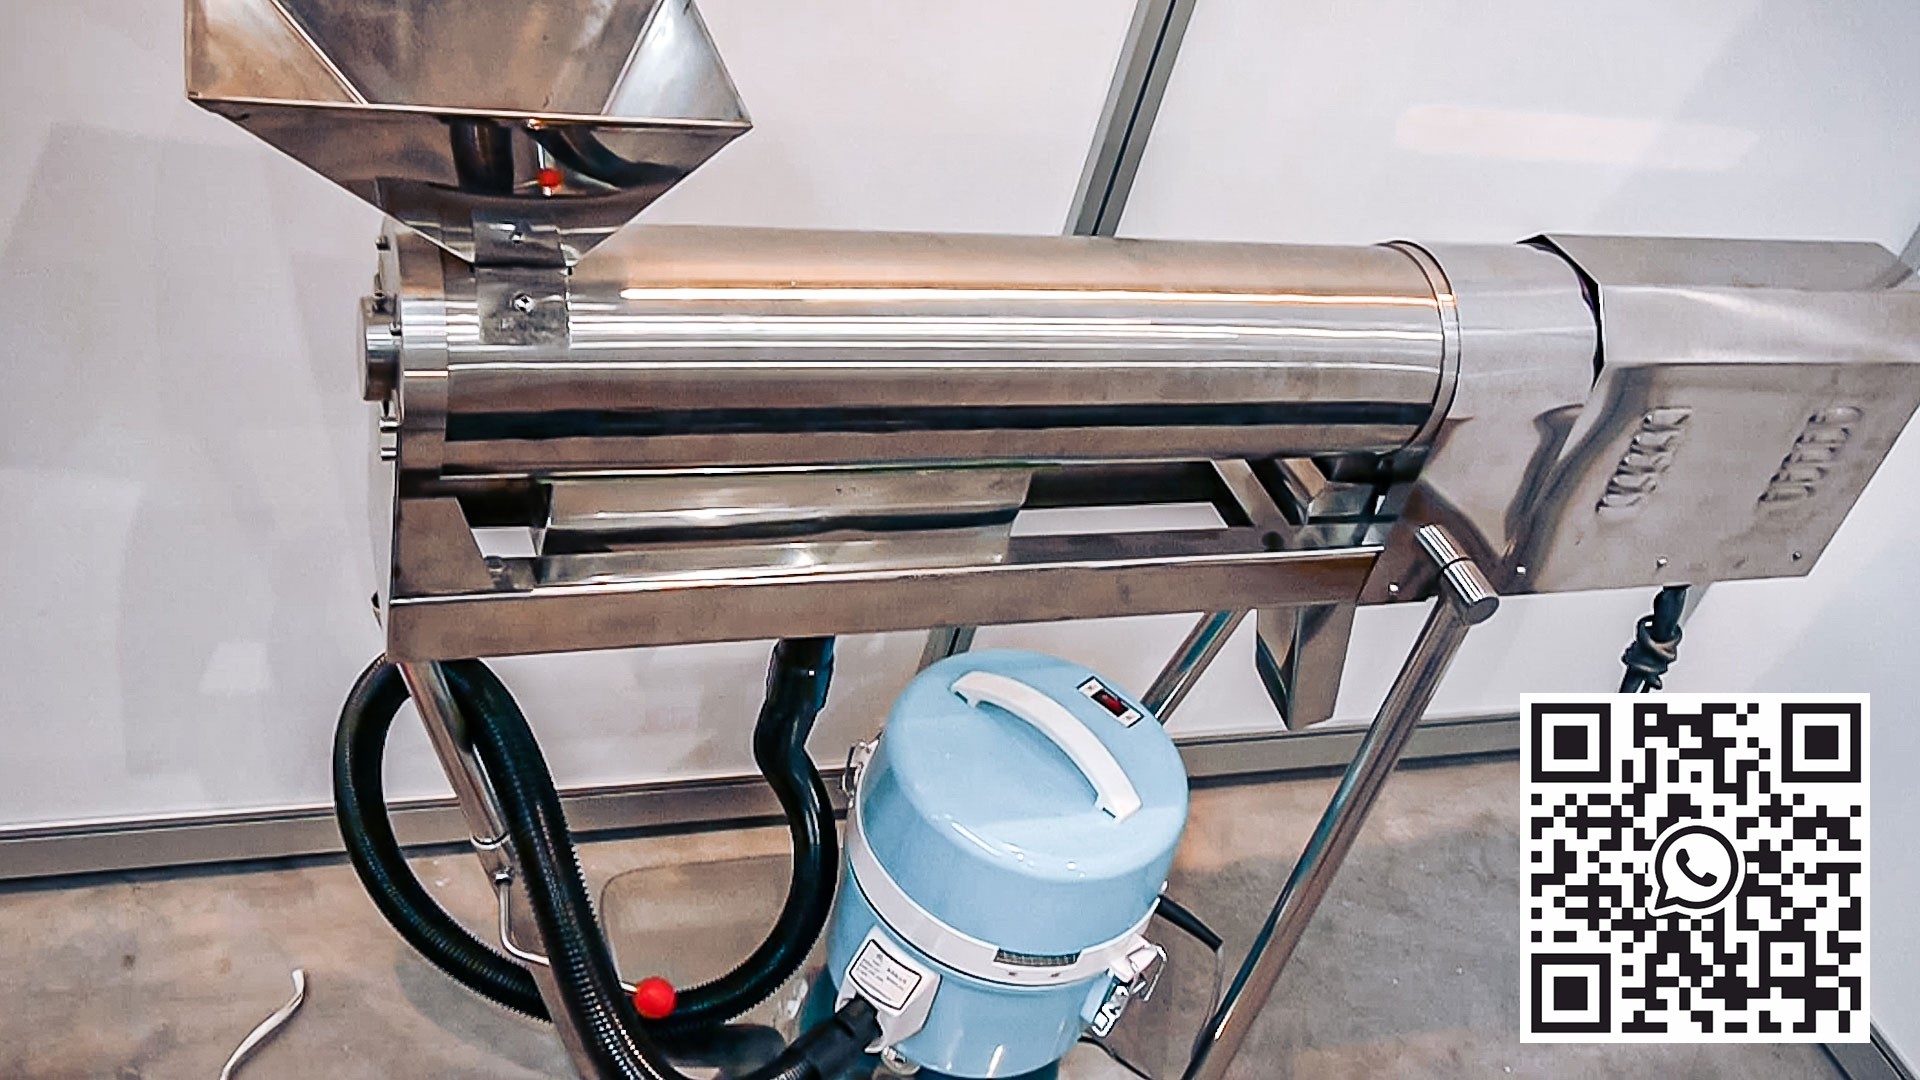 Automatisk utstyr for rengjøring og polering av faste gelatinekapsler